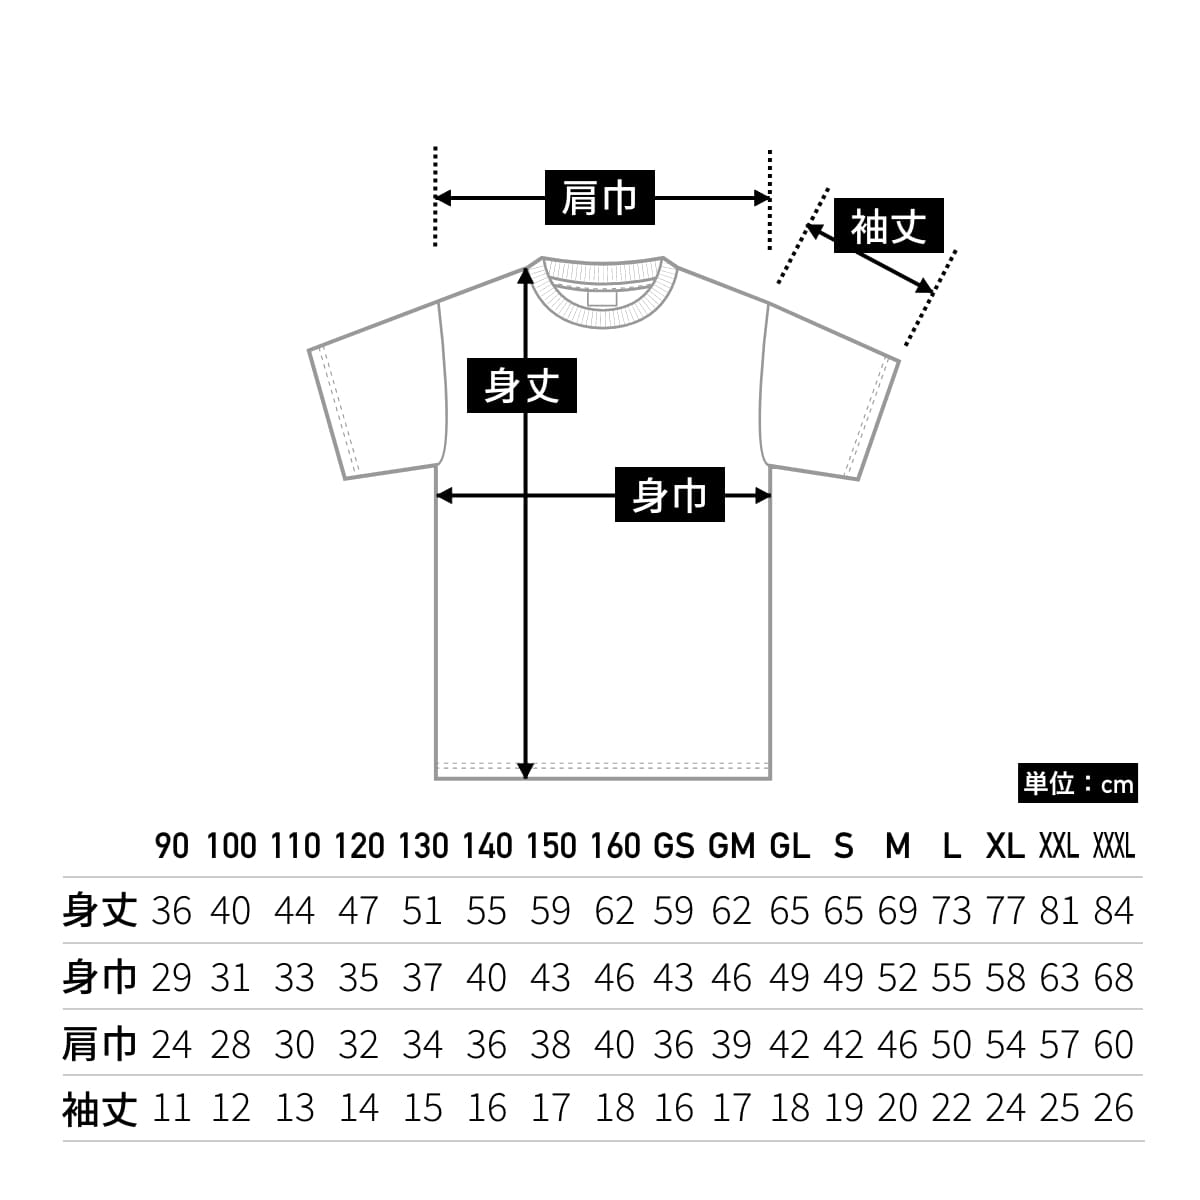 5.6オンス ハイクオリティーTシャツ | ビッグサイズ | 1枚 | 5001-01 | サックス